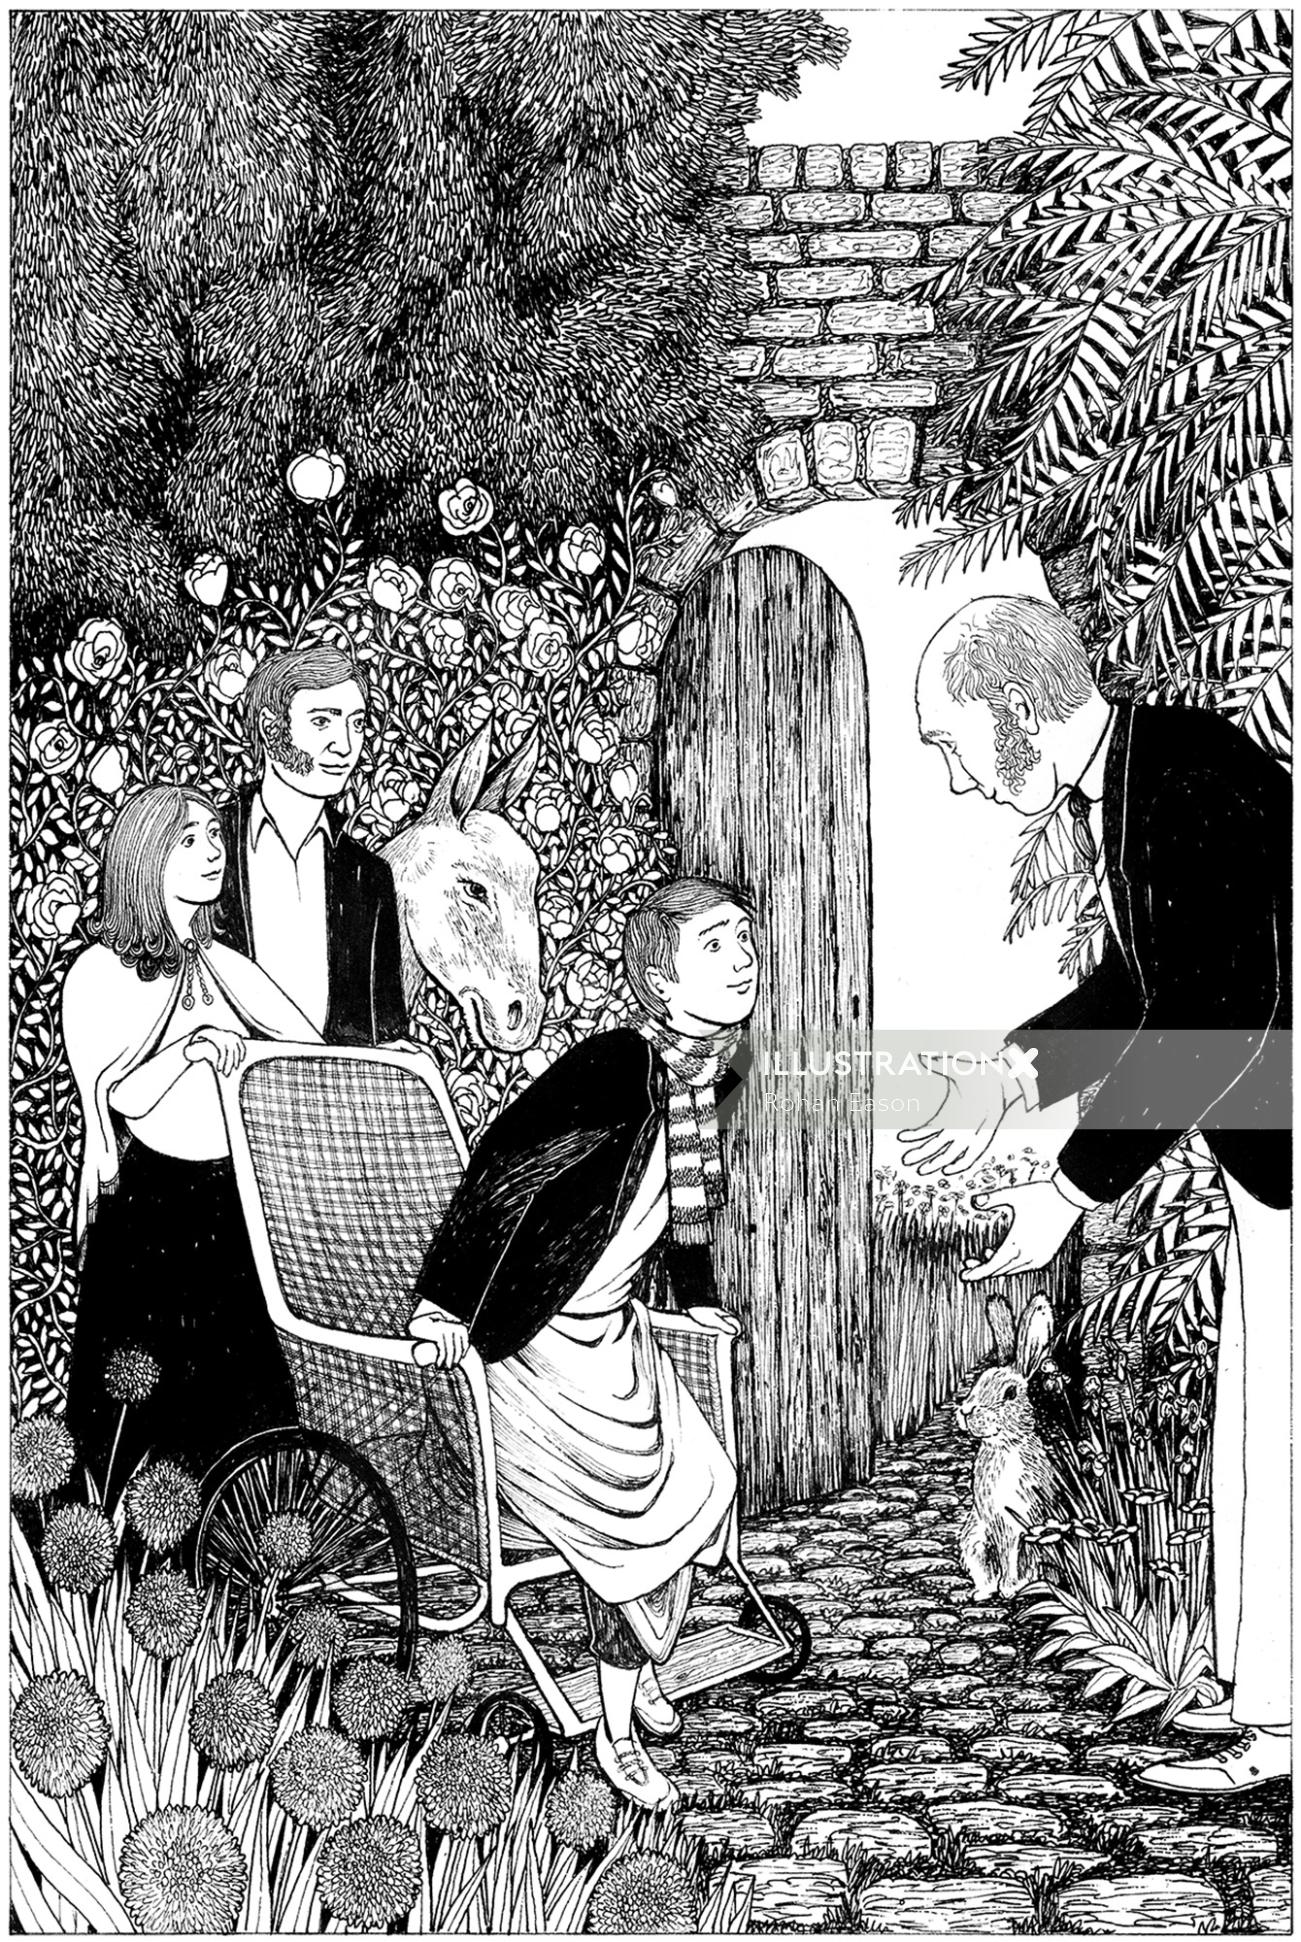 Black and white illustration of The secret garden